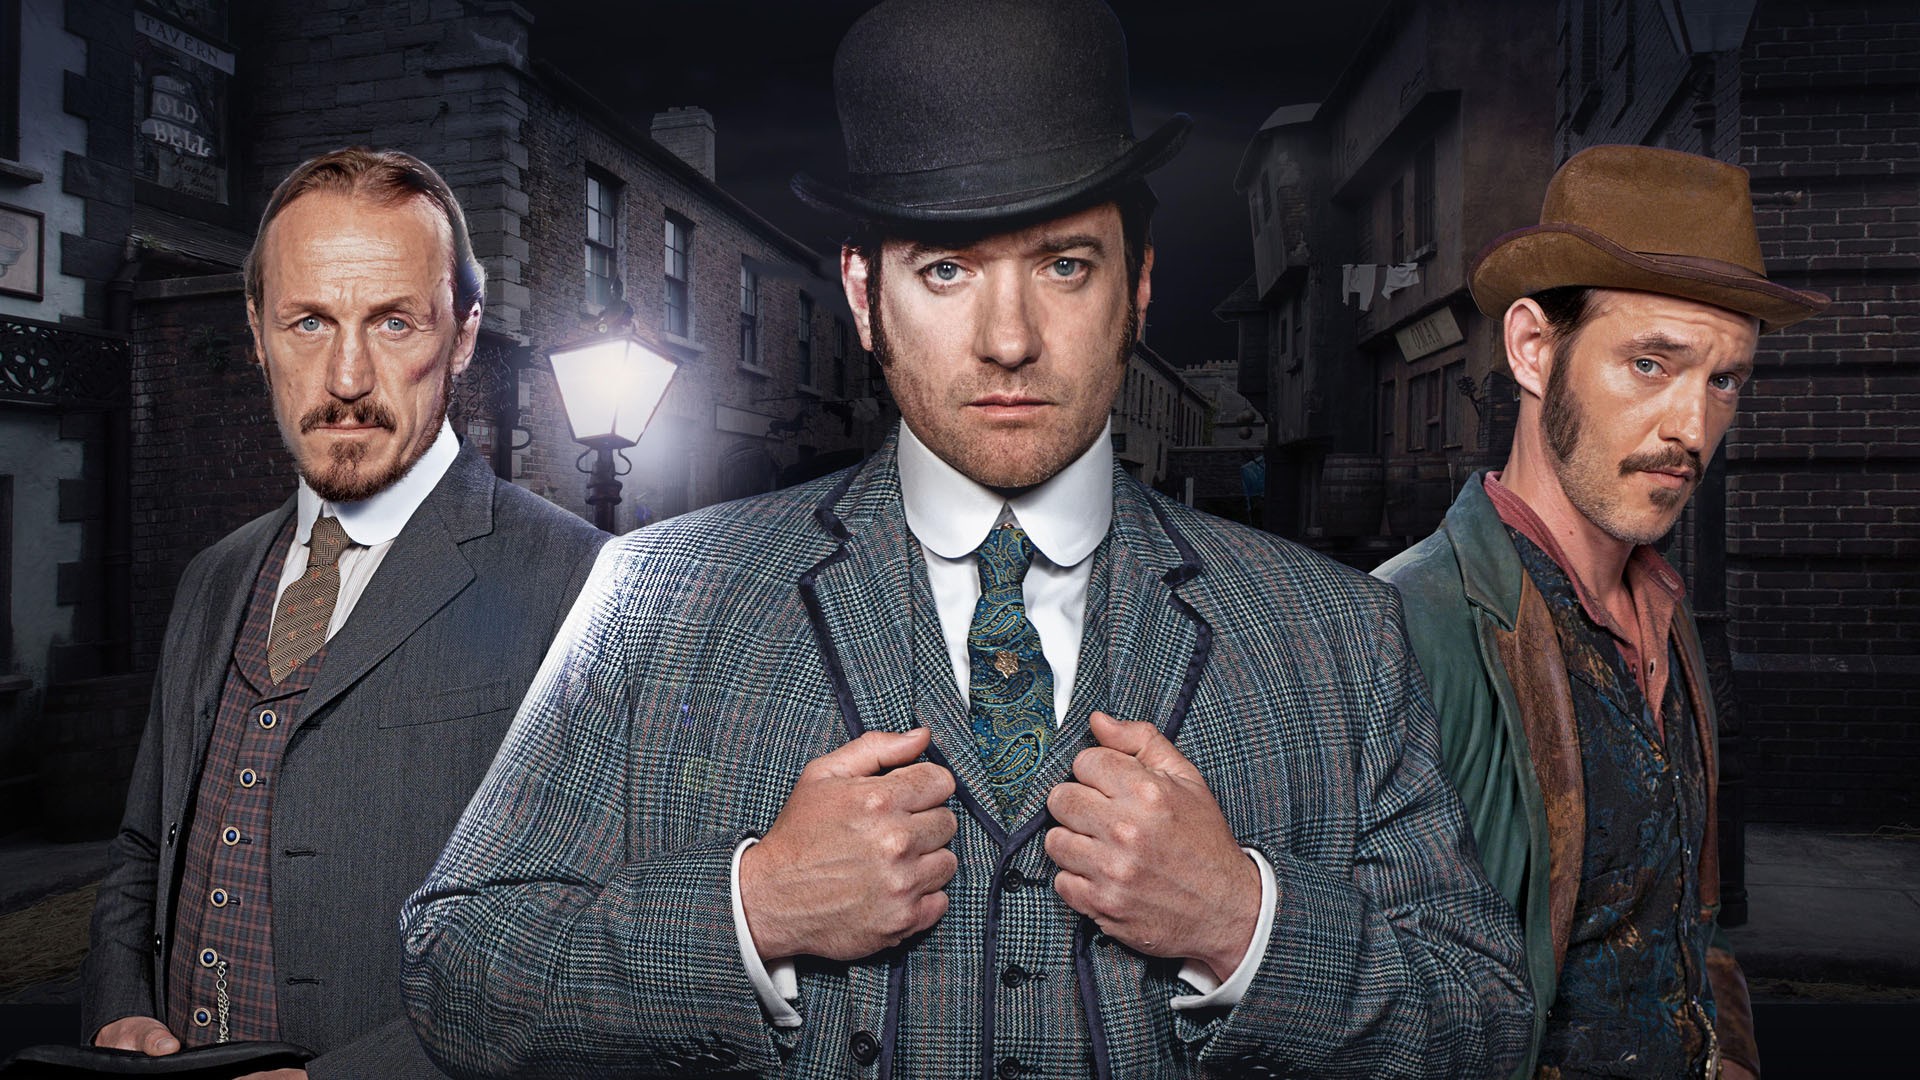 People 1920x1080 TV series Ripper Street men tie hat actor looking at viewer